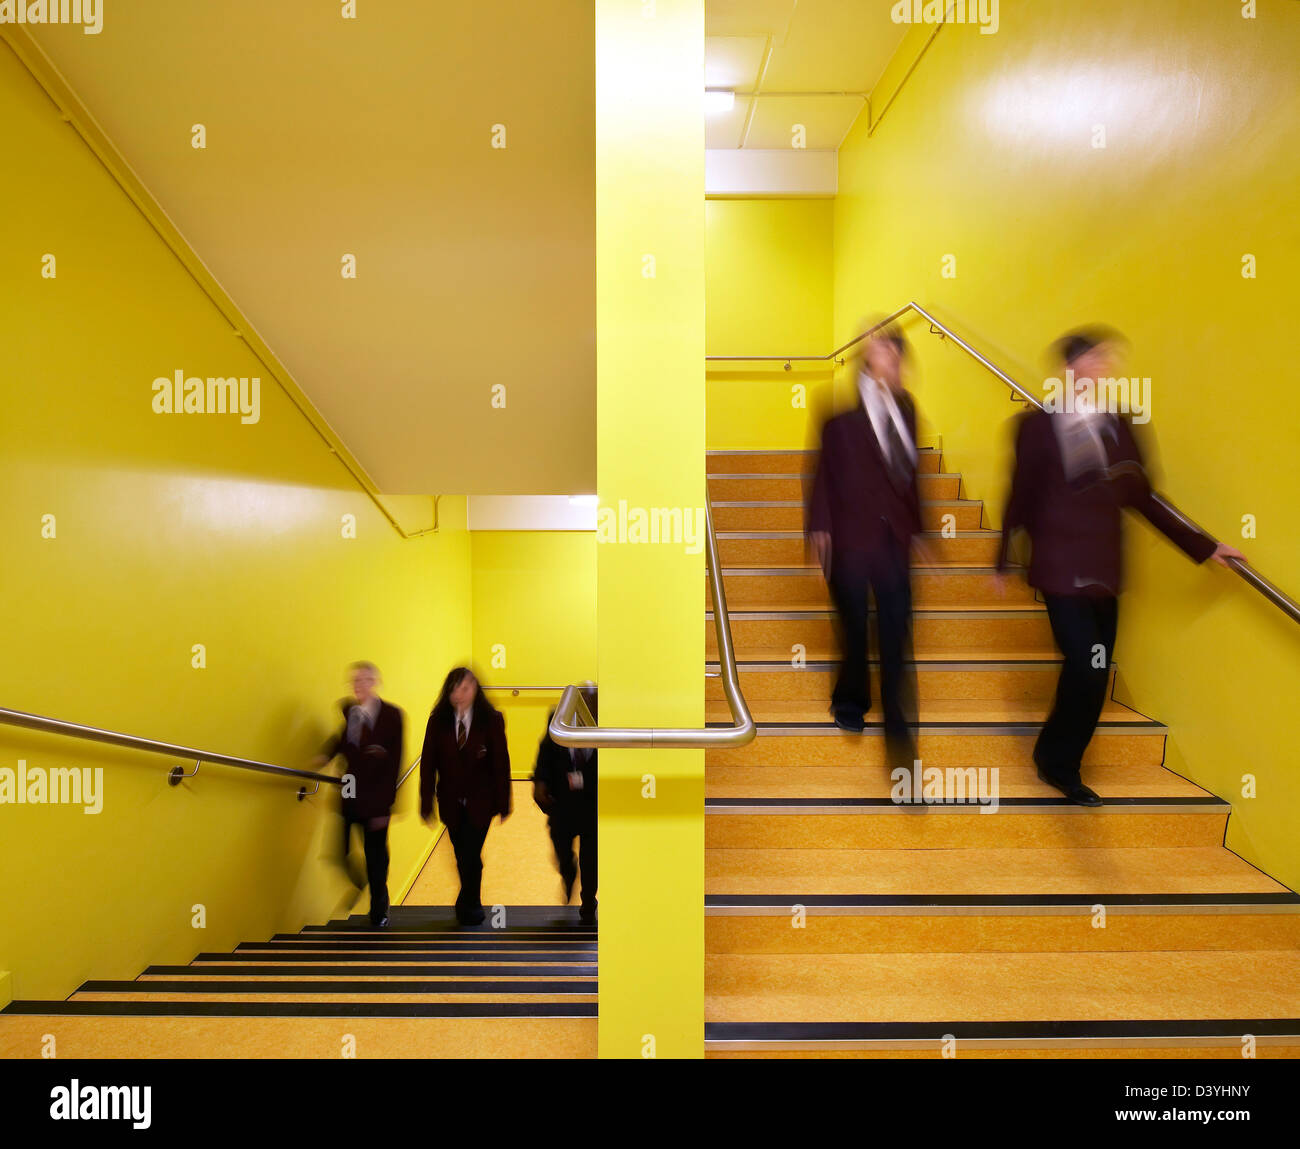 RSA-Akademie, Tipton, Vereinigtes Königreich. Architekt: John McAslan & Partner, 2011. Leuchtend gelbe Treppe mit Studenten in Bewegung. Stockfoto